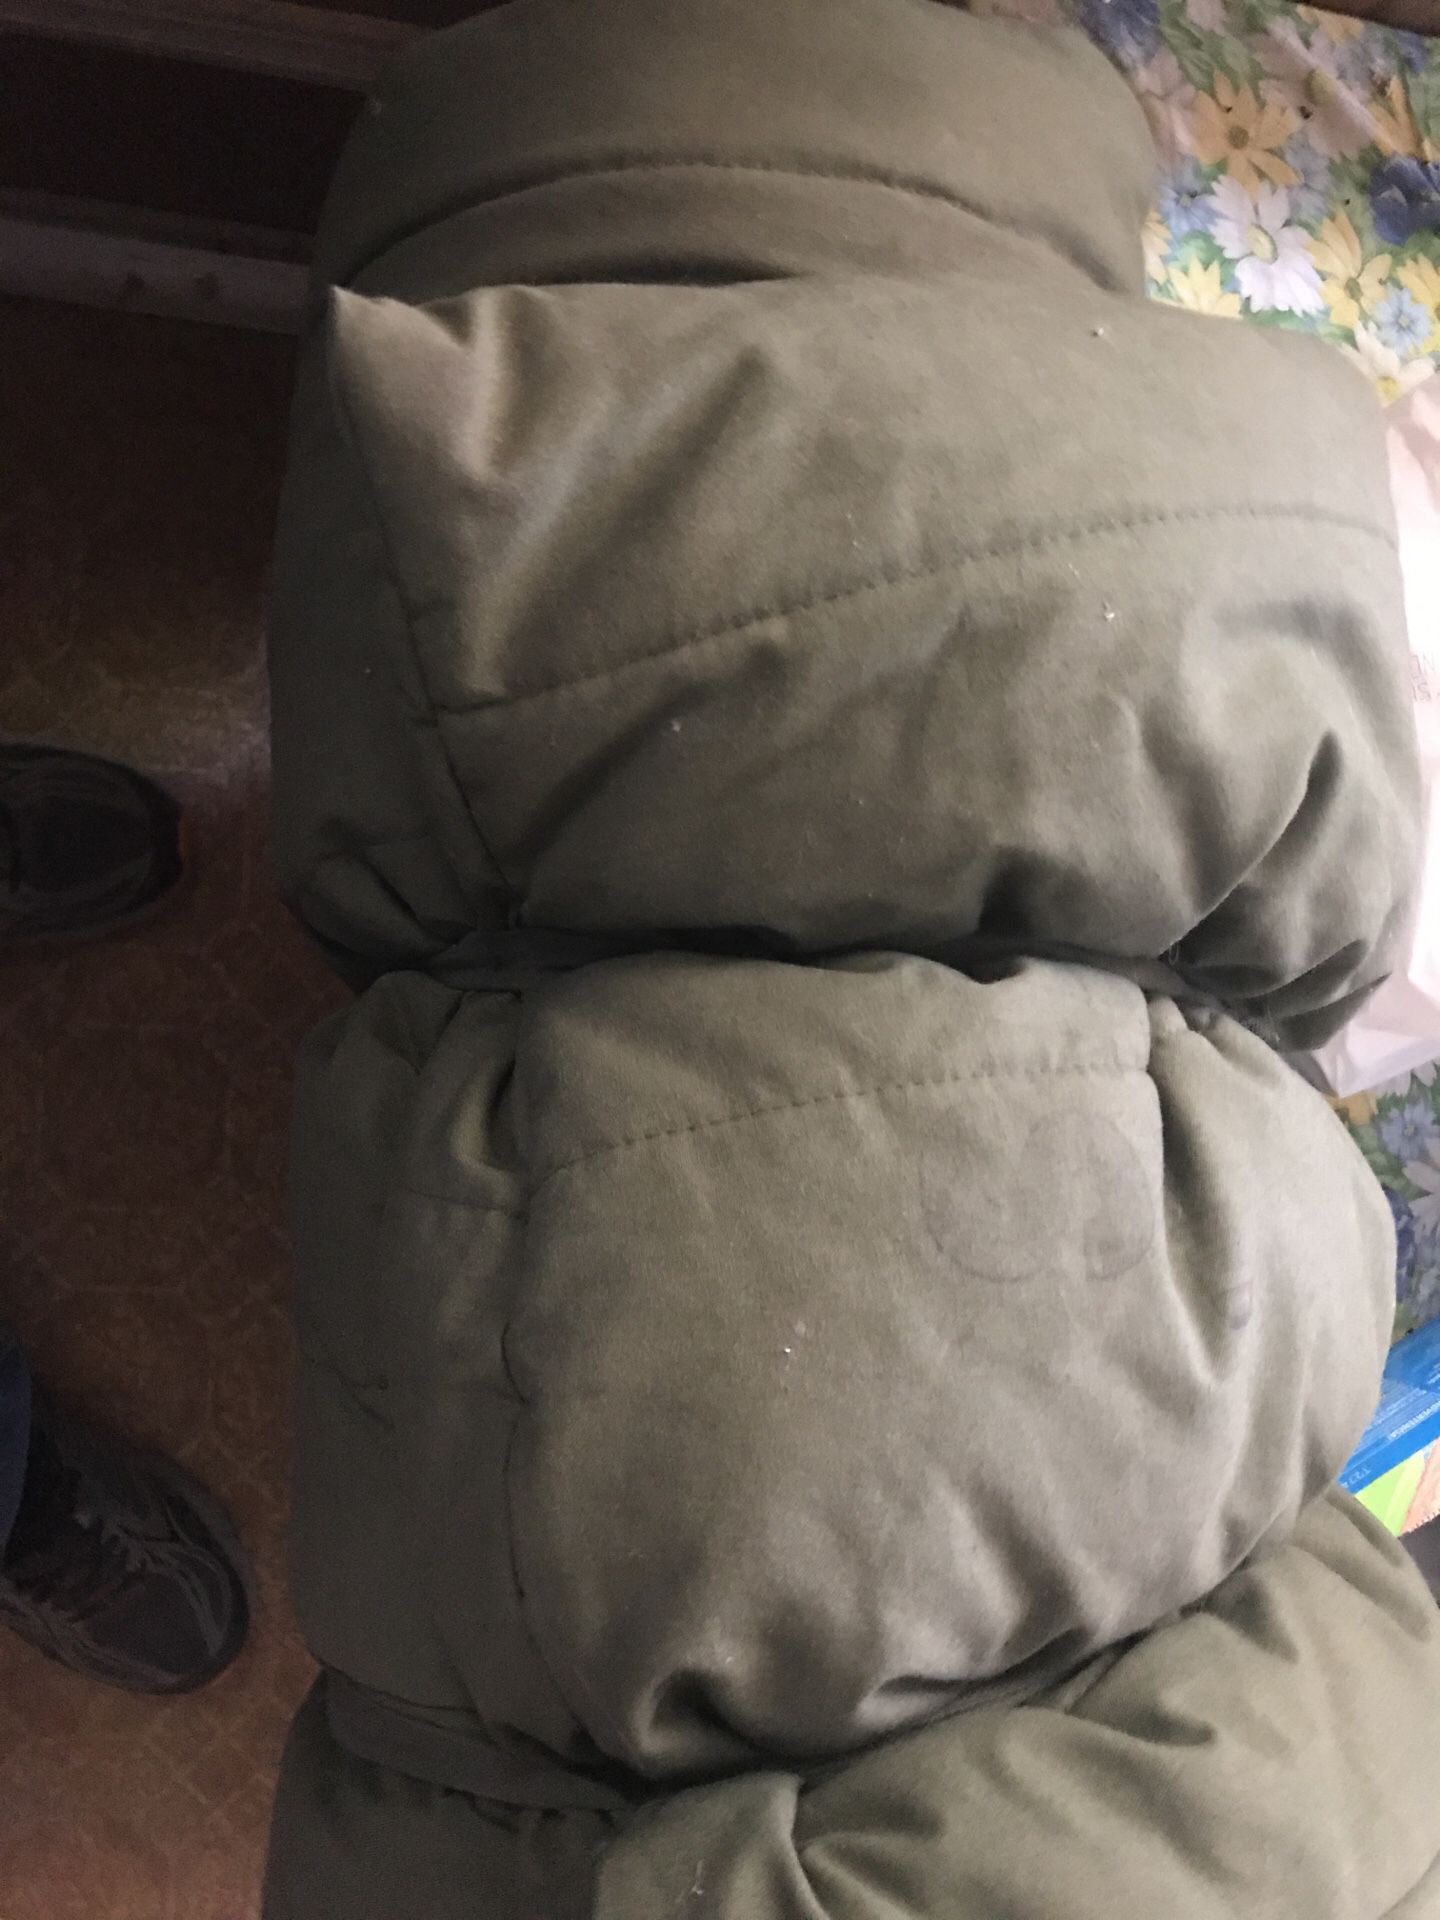 Military sleeping bag.